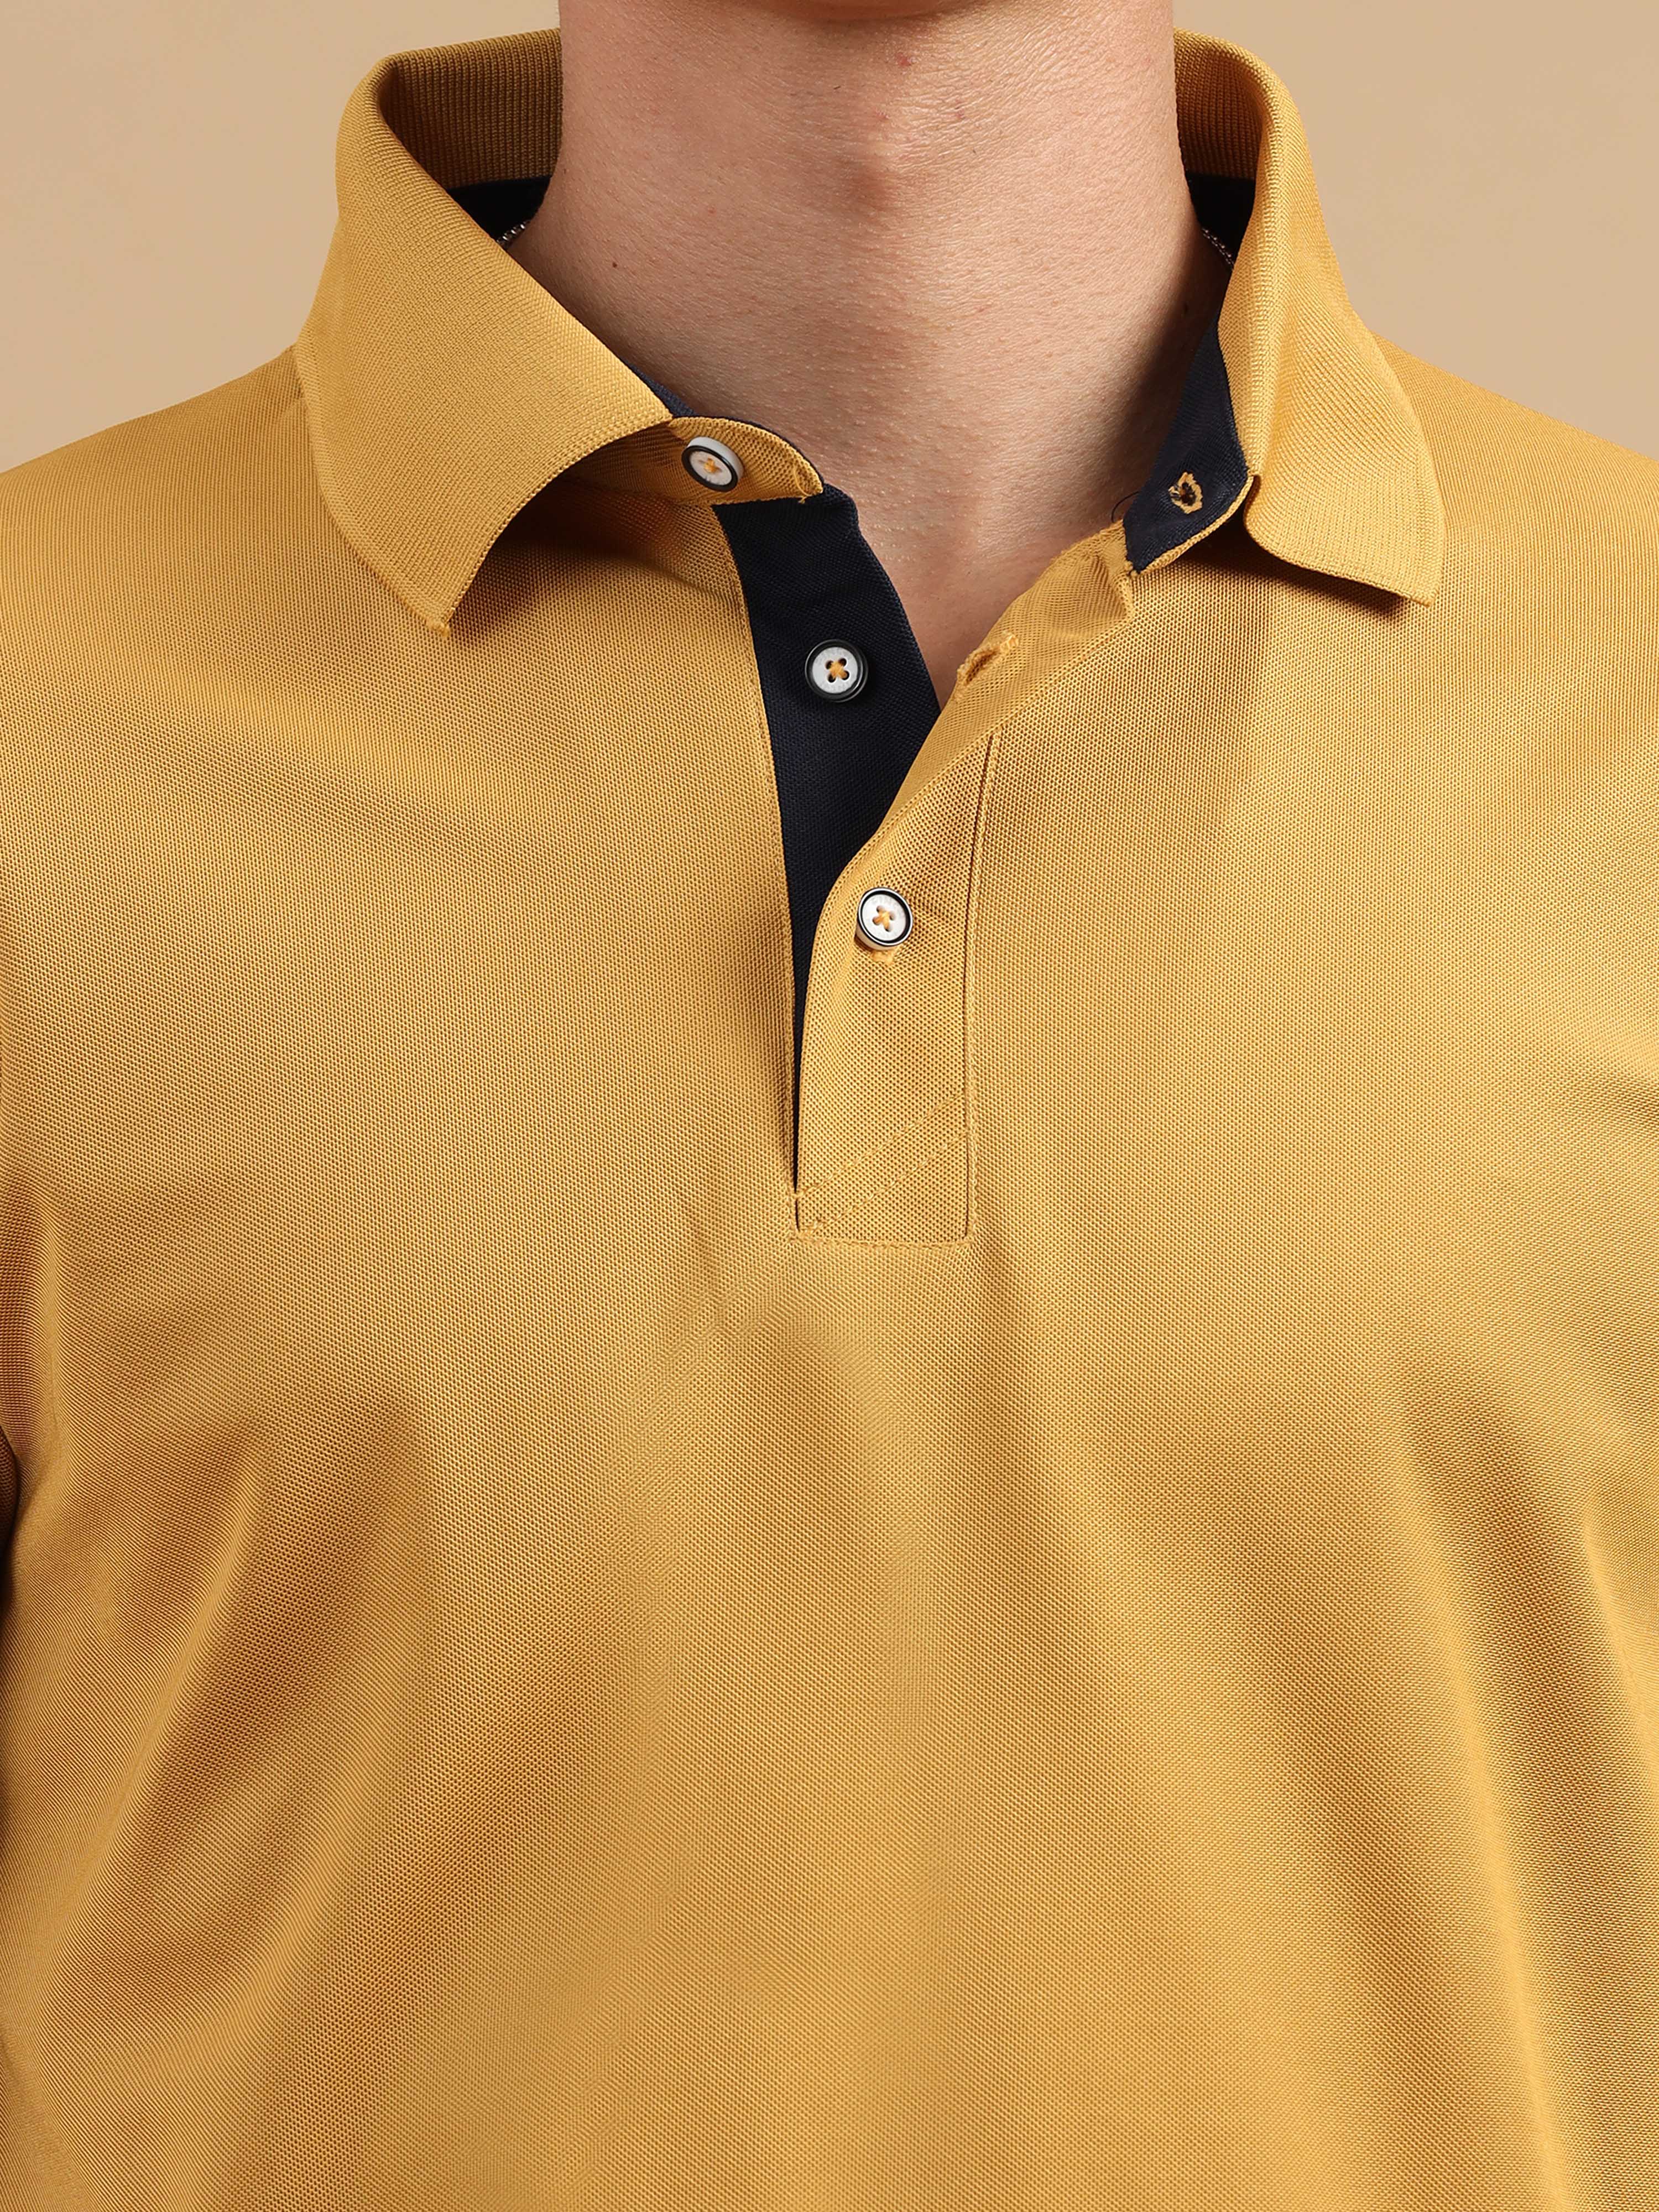 Mustard Yellow Men's Polo T-shirt